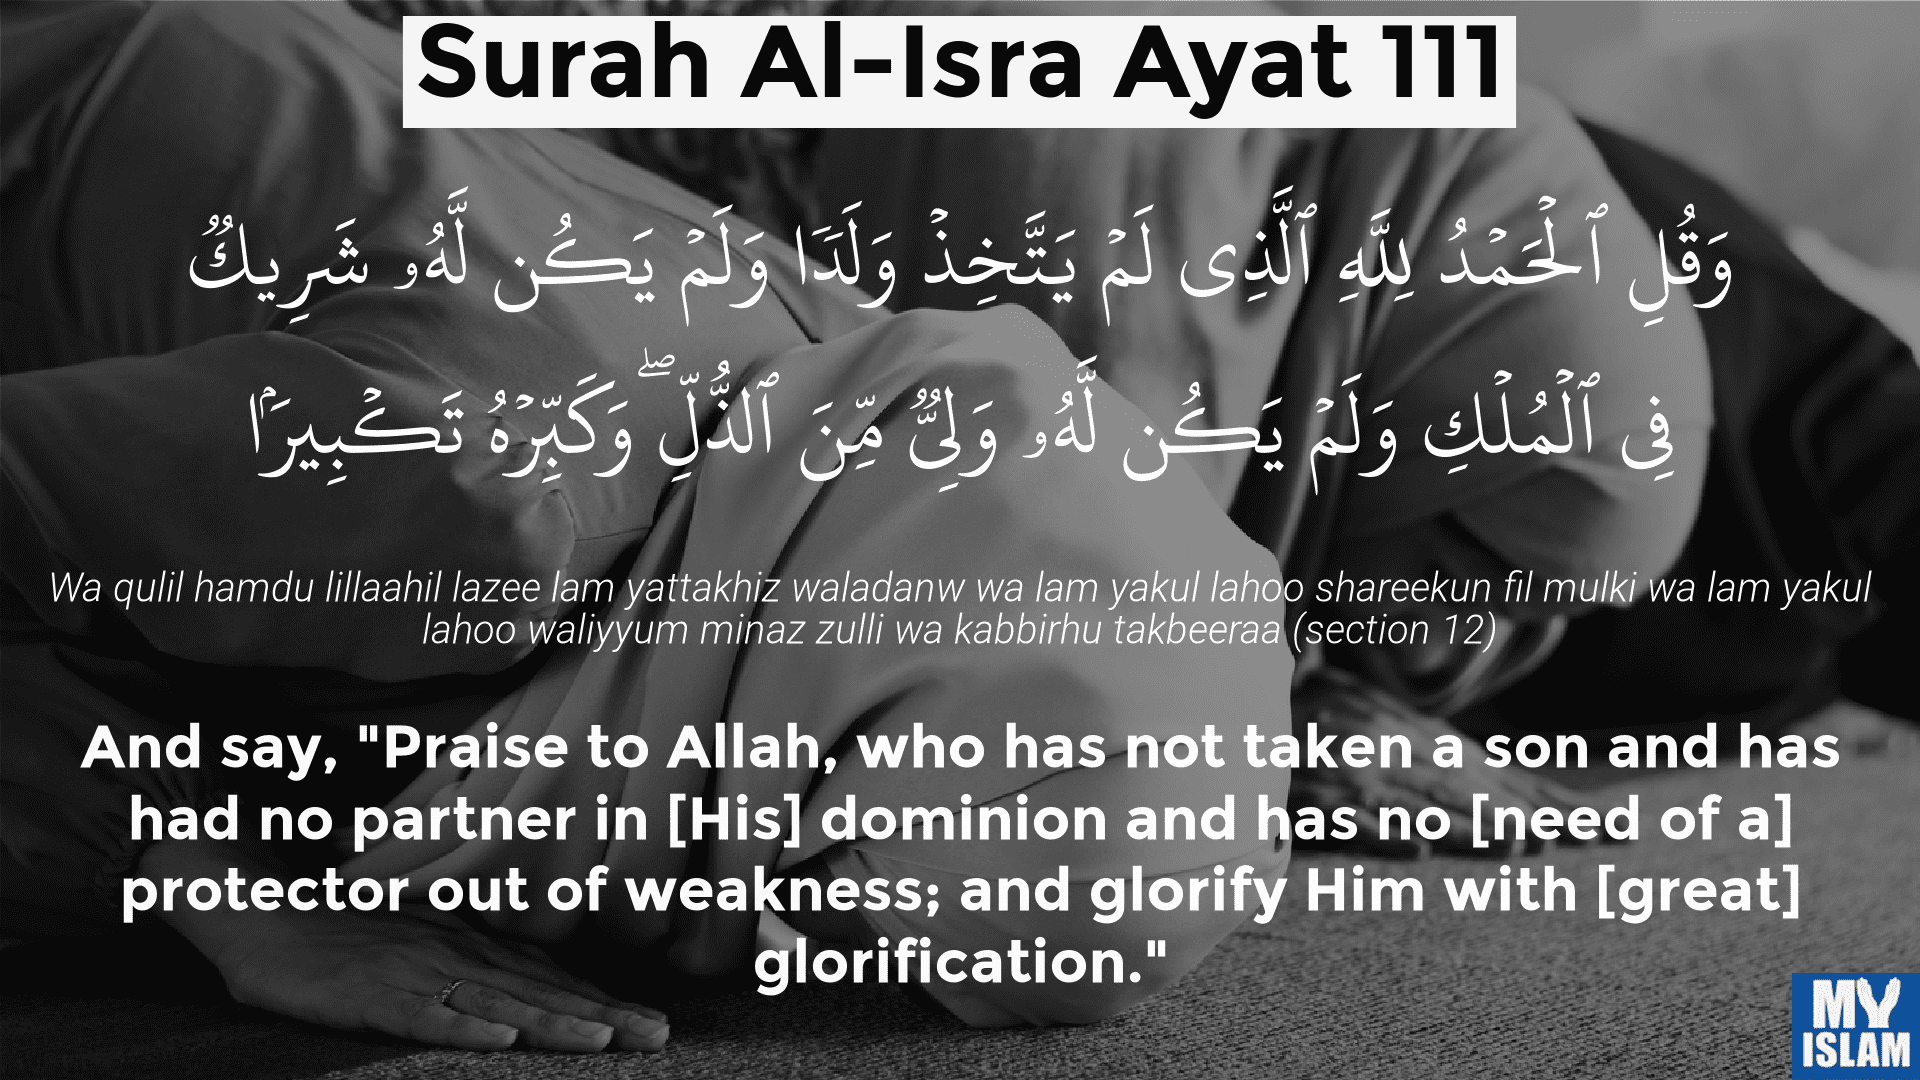 Surah-Al-Isra-Ayat-111.png